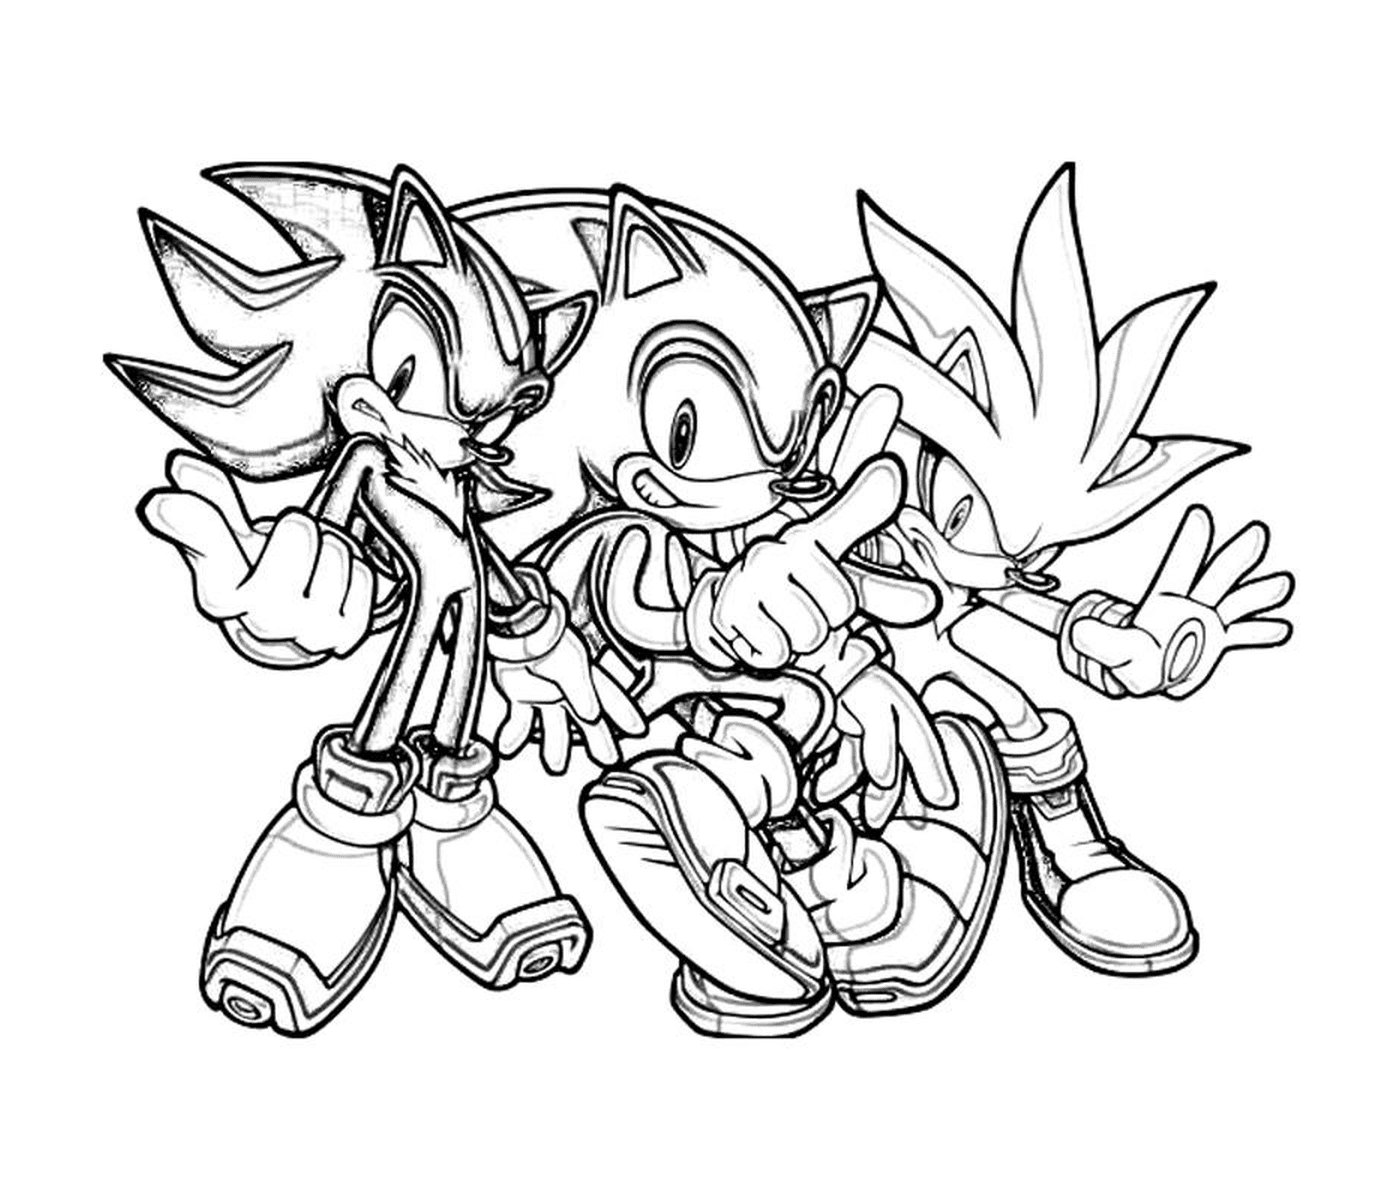  Una banda di Sonic energico 